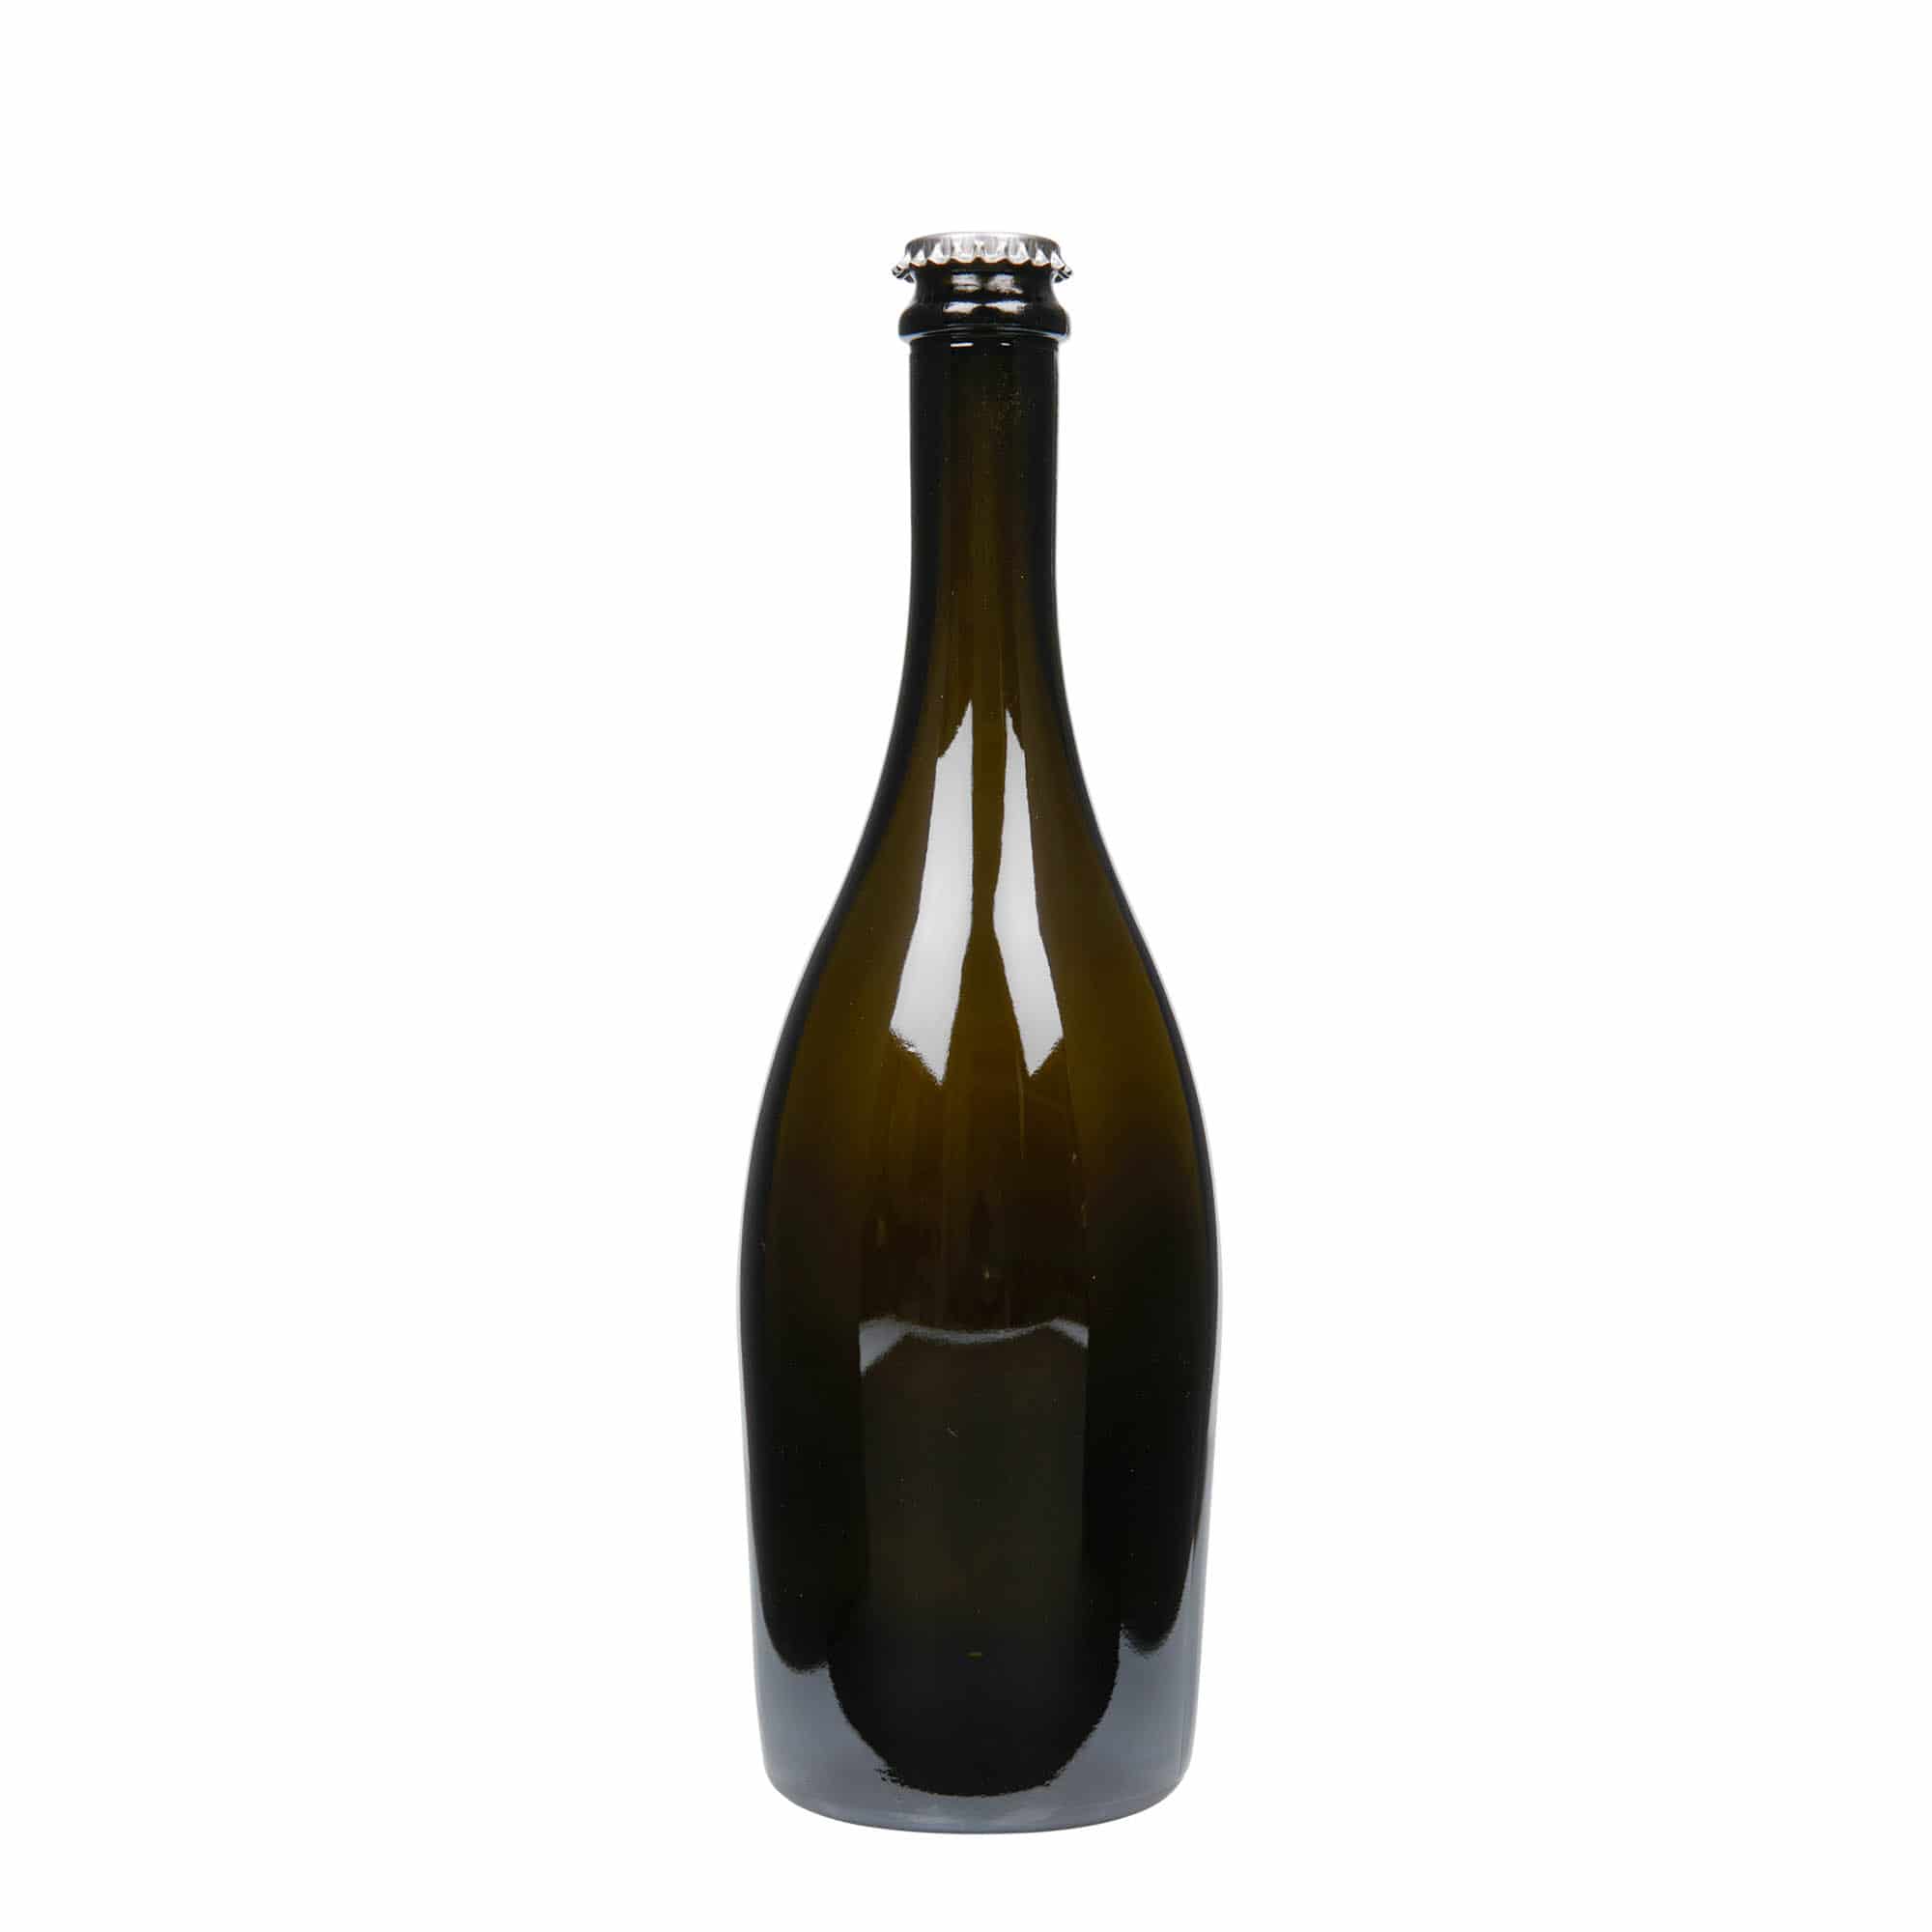 750 ml butelka do szampana 'Carmen', szkło, kolor zielony antyczny, zamknięcie: kapsel